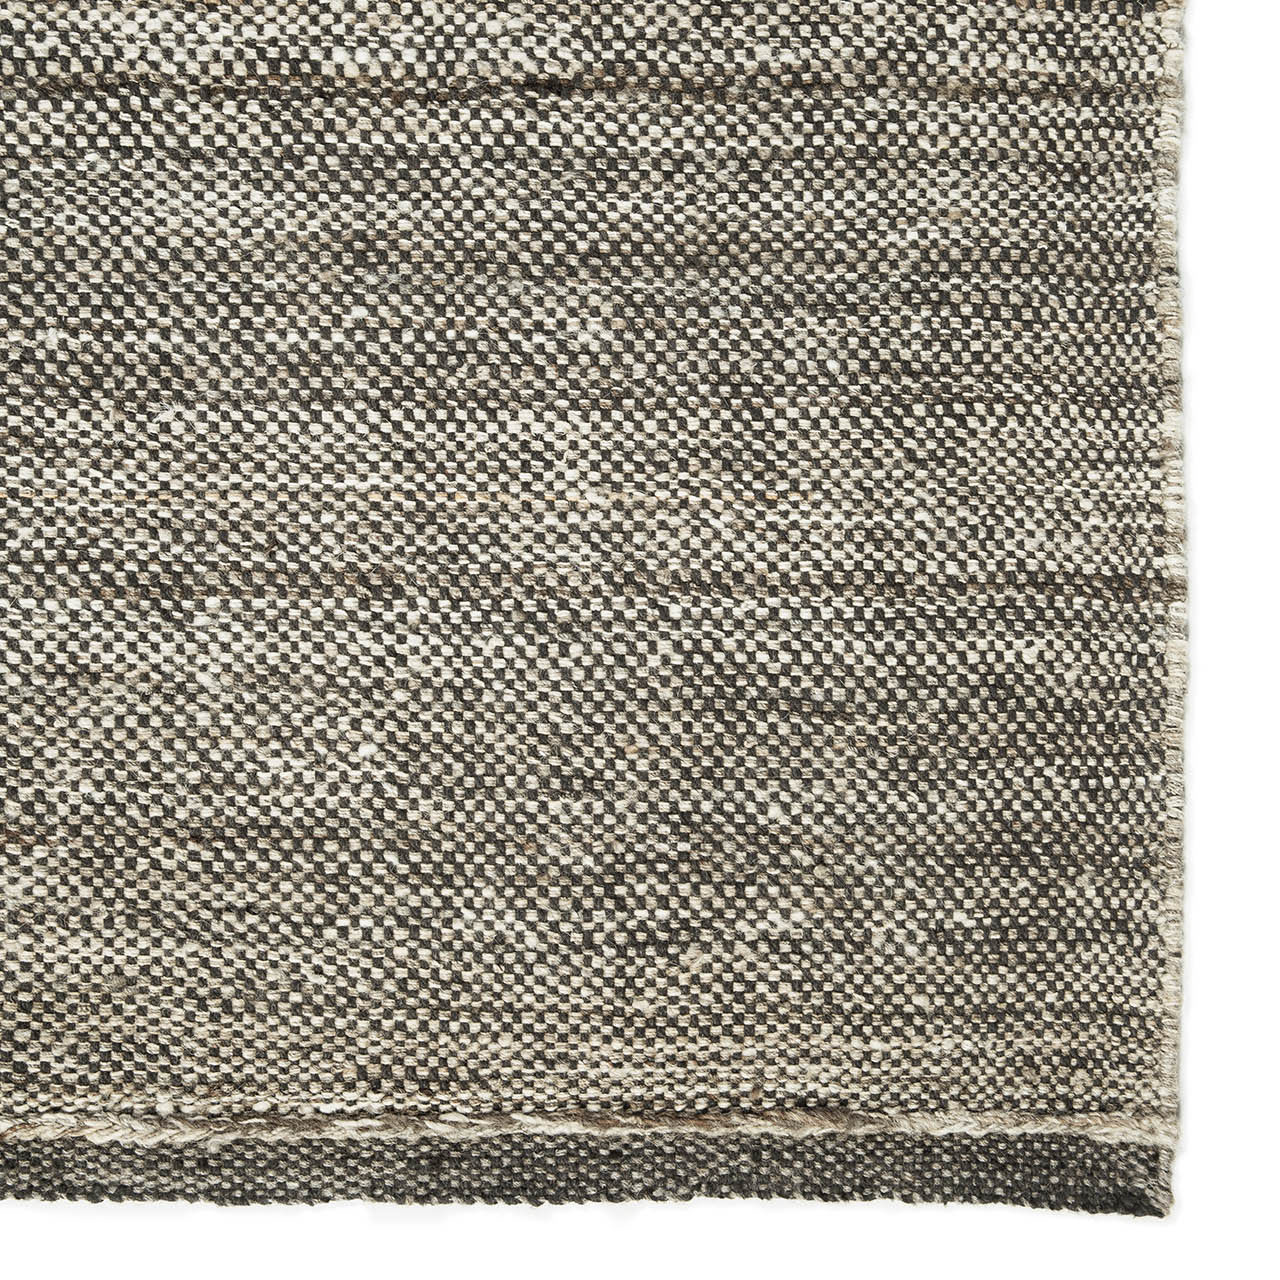 Checked Kilim-Teppich Natur 100 % handgesponnene Wolle 21727